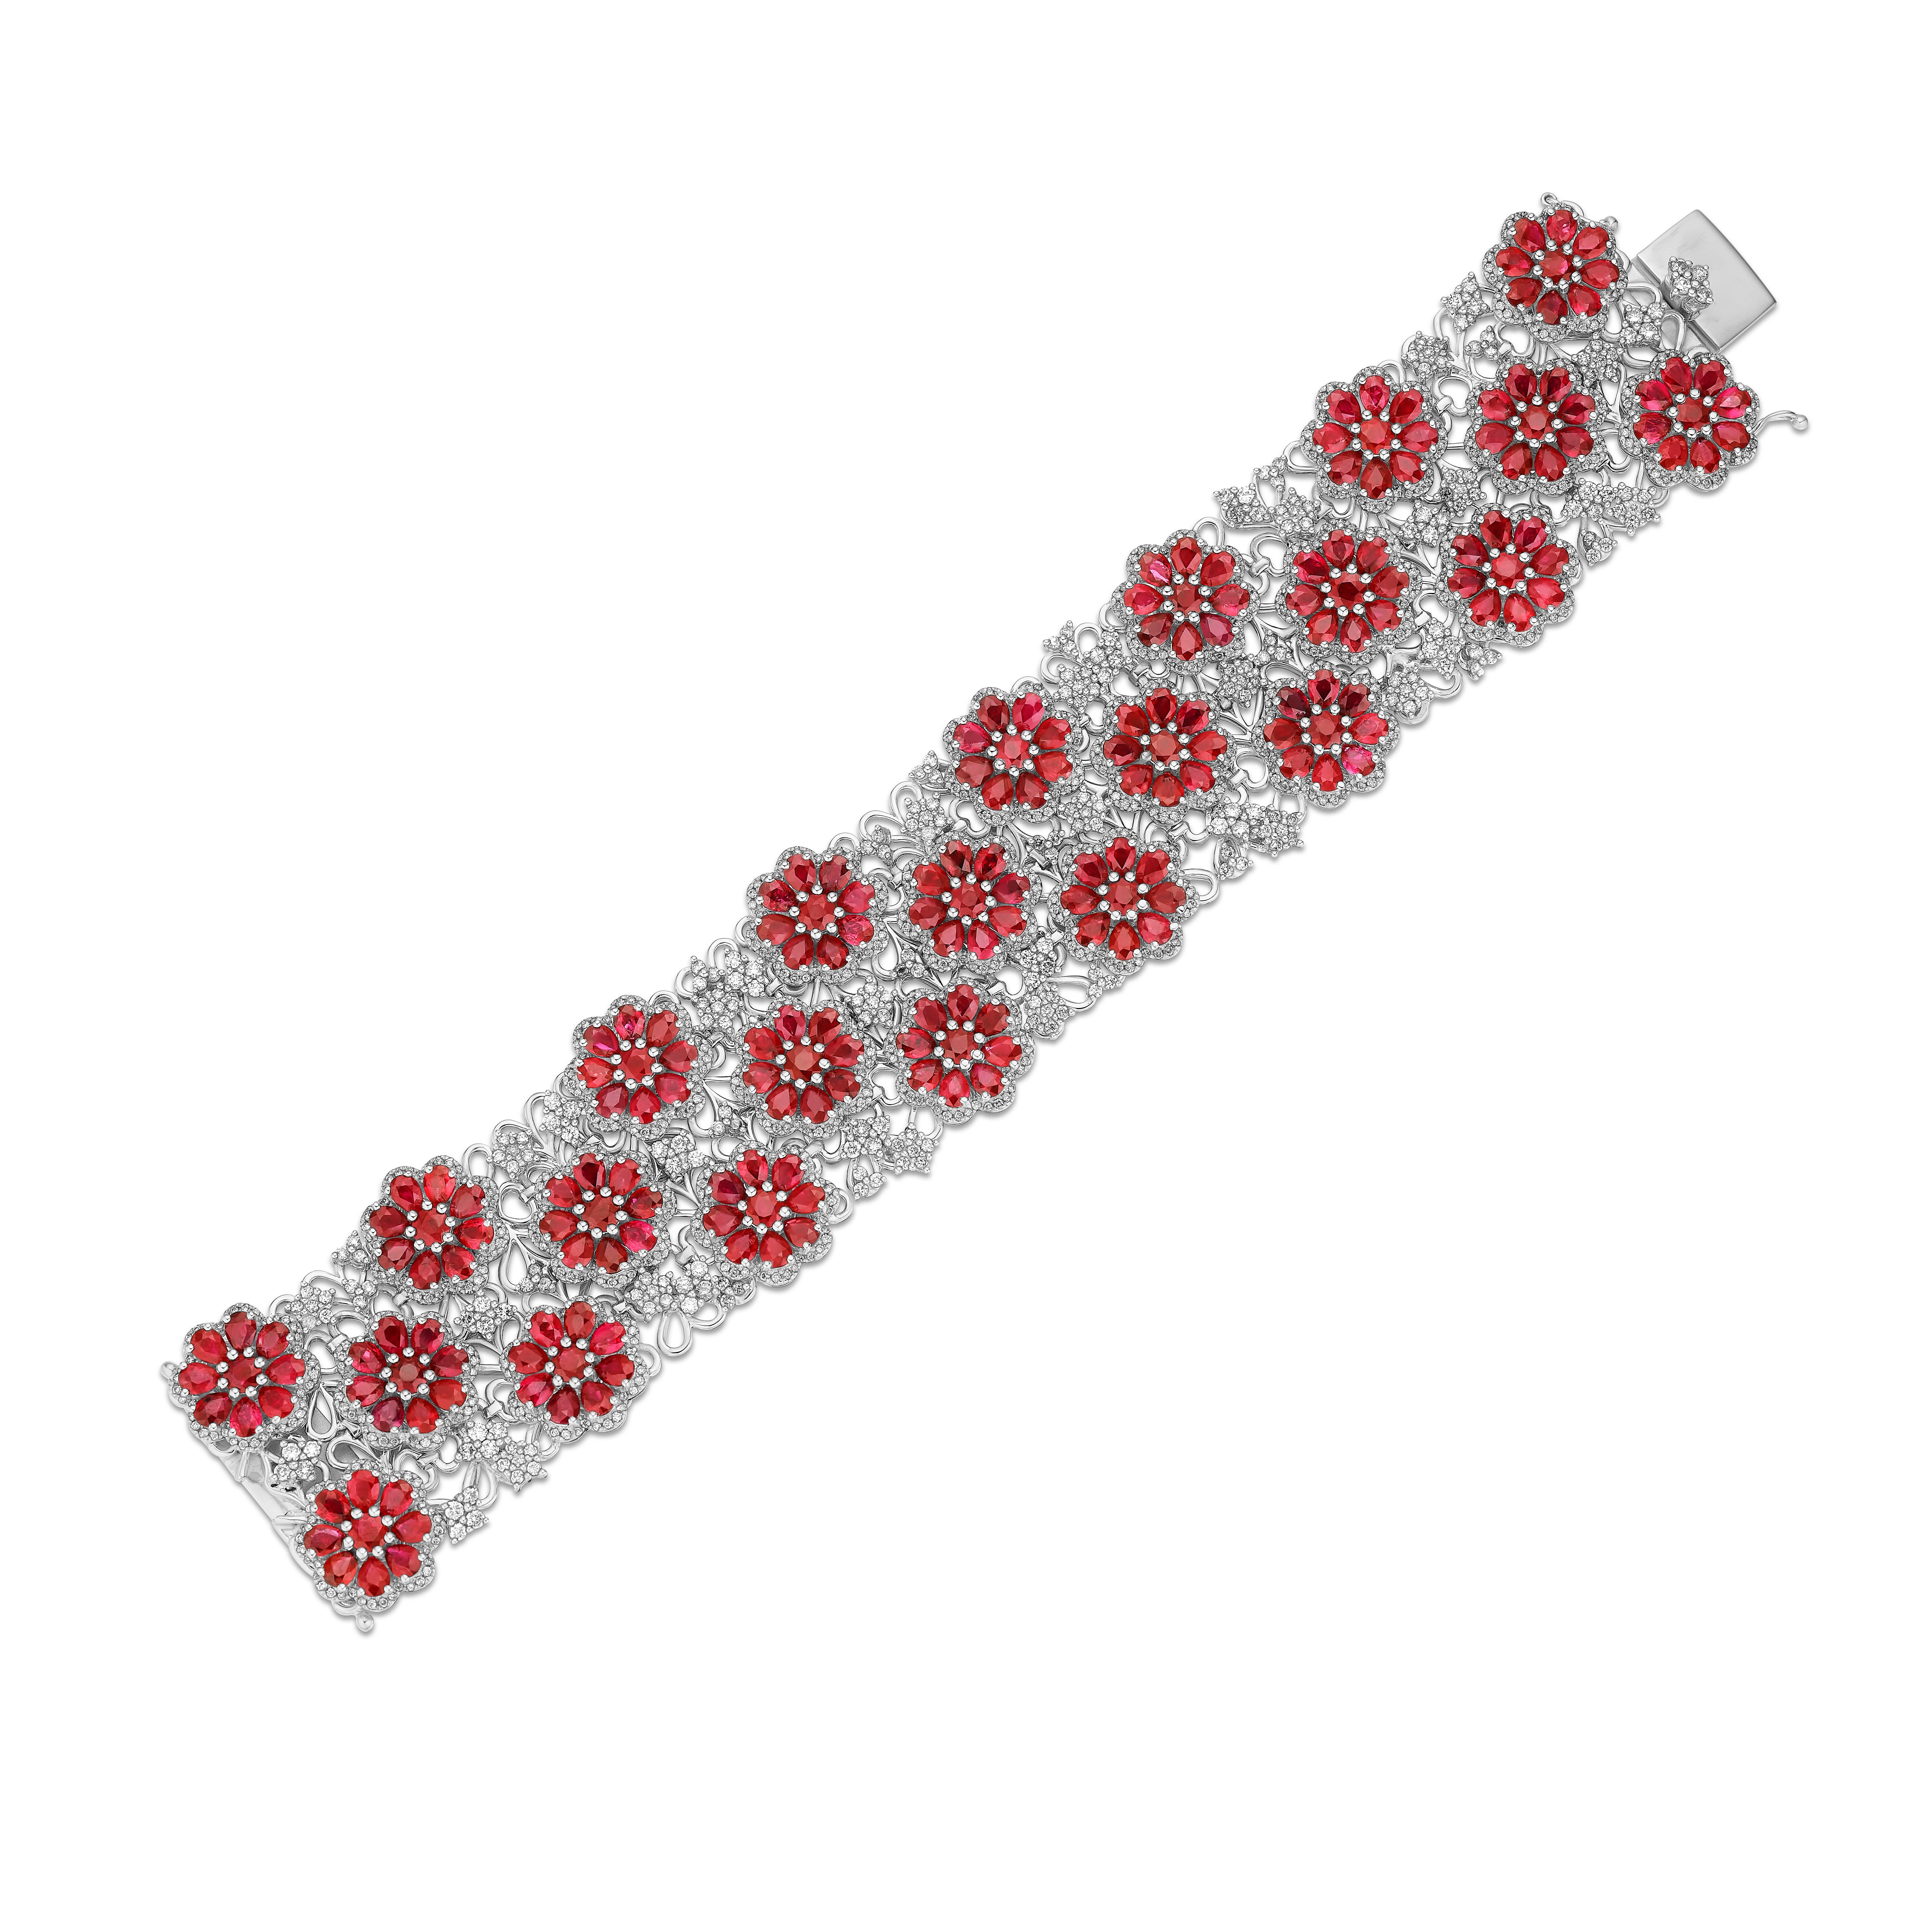 •	Une combinaison vraiment exquise de rubis rouges et de diamants blancs entoure le poignet dans ce bracelet unique en son genre. Composé de plus de 50 carats de rubis et de diamants, ce bracelet a été conçu pour représenter l'élégance et la beauté